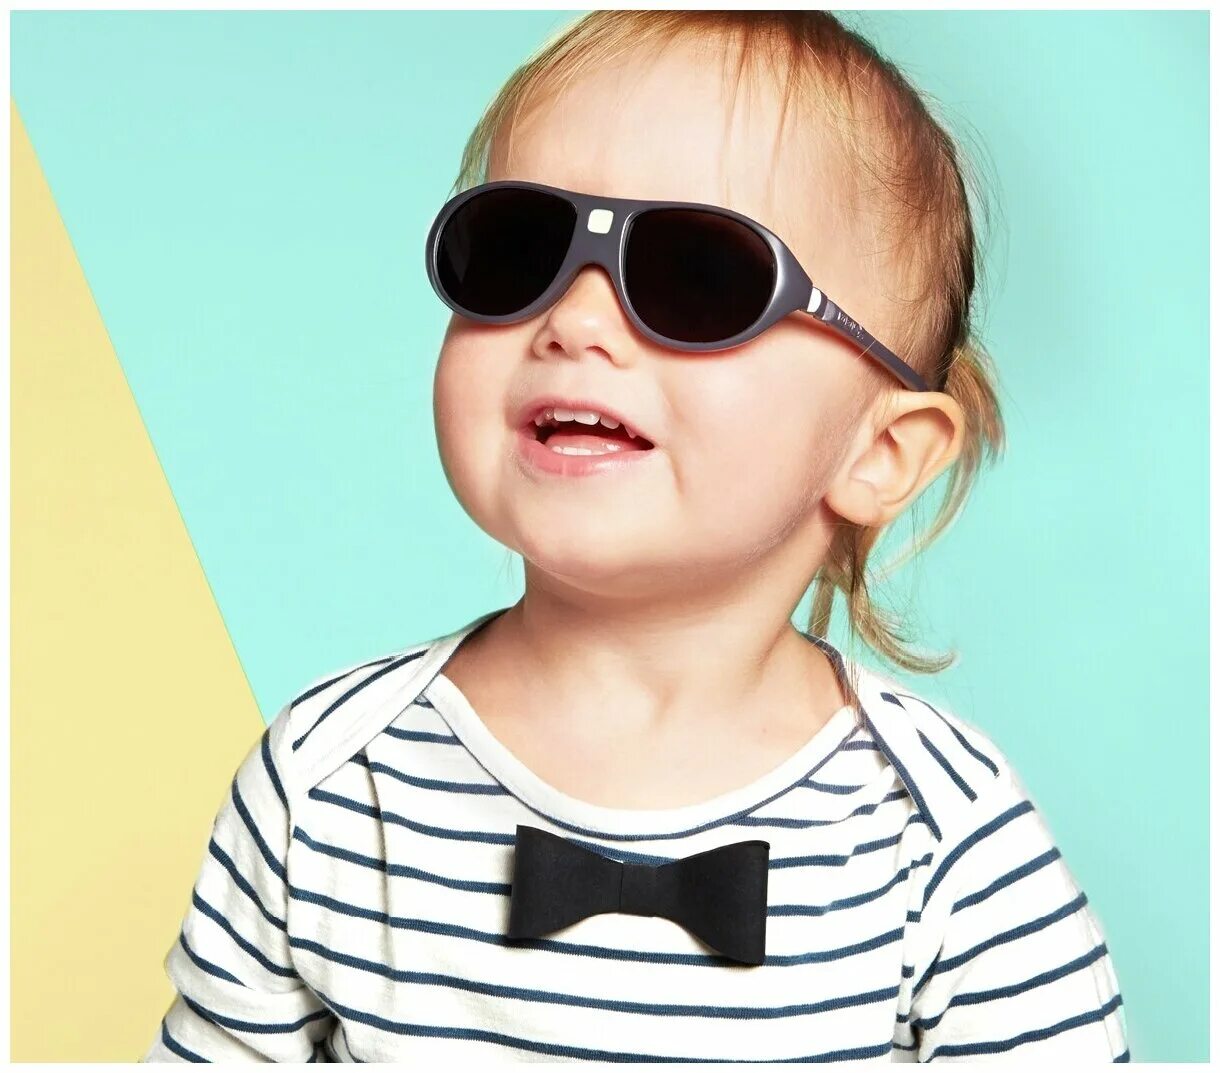 Vehla очки купить. Детские солнцезащитные очки. Детские очки от солнца. Дети в солнцезащитных очках. Ребенок в солнечных очках.